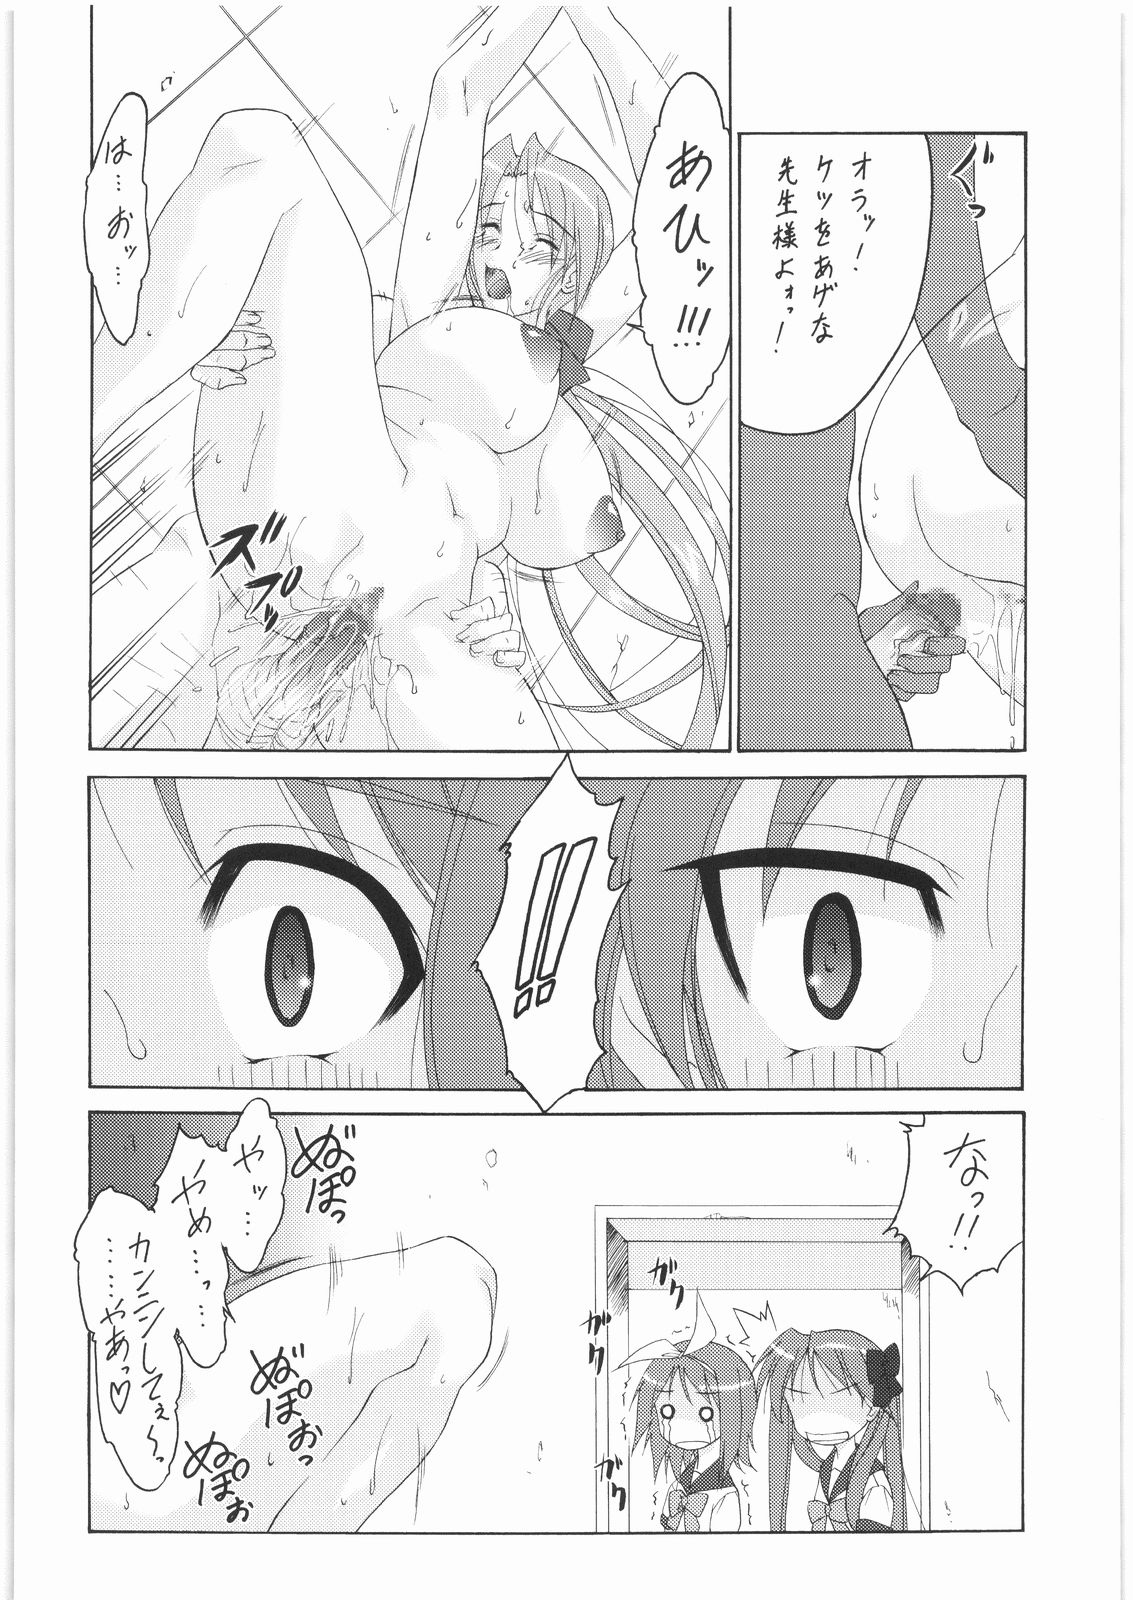 [Suzuki Giken & Tsurikichi-Doume] Konata no Maruhi Baito (Lucky Star) page 7 full